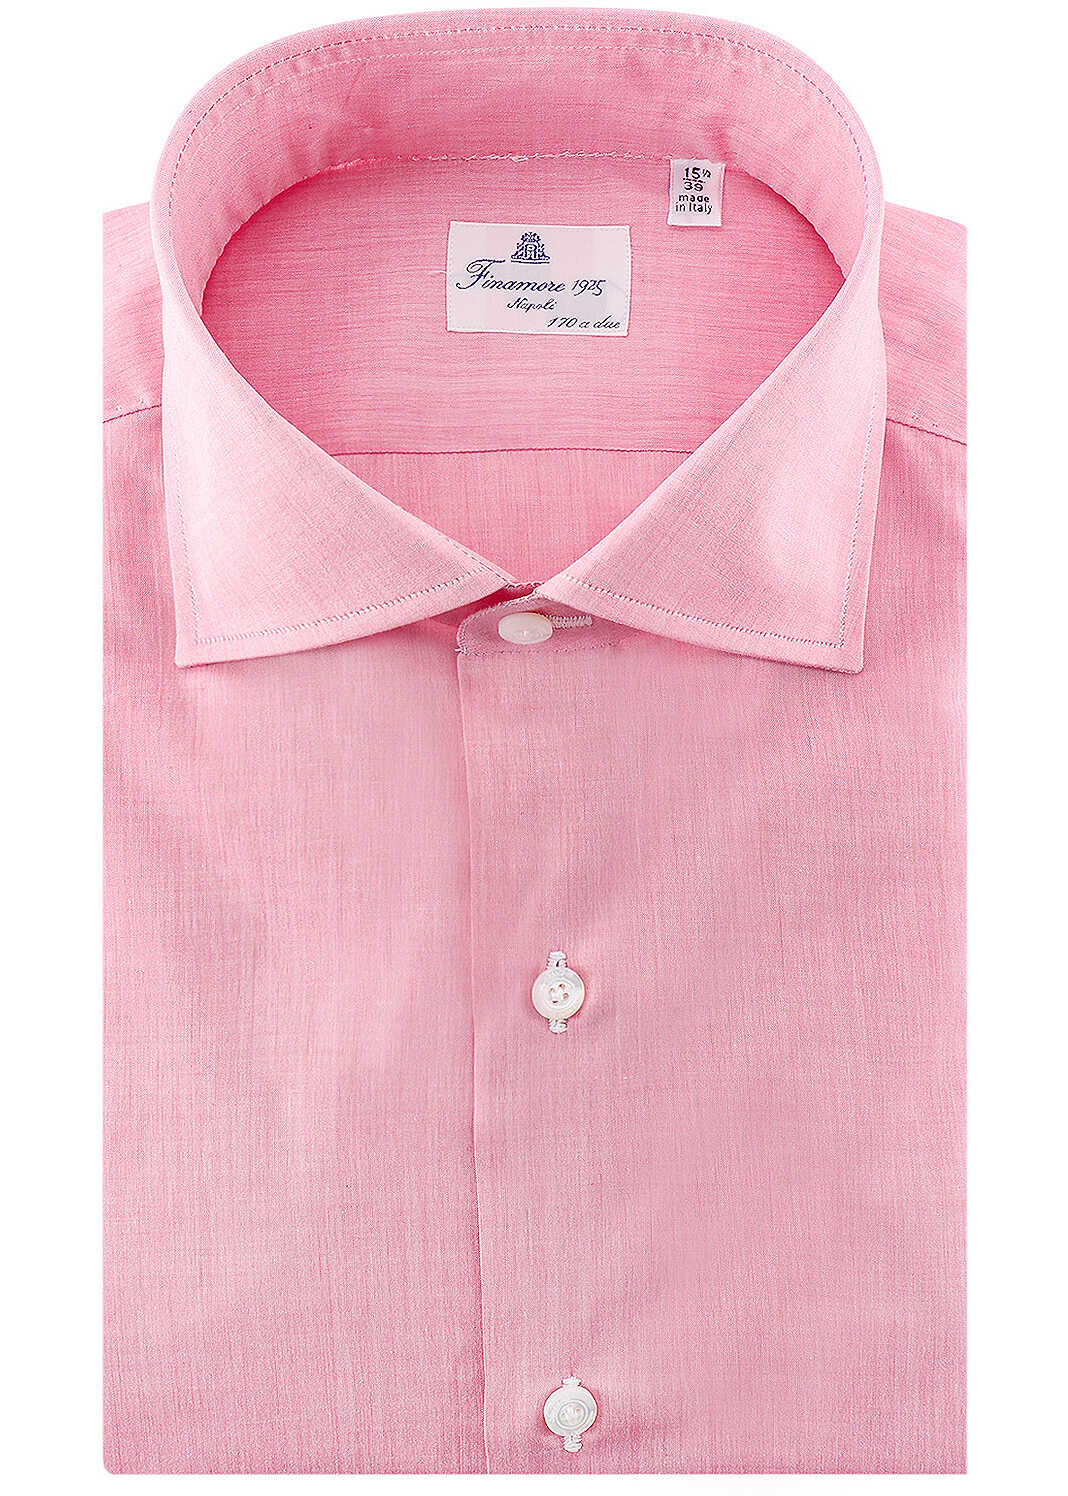 FINAMORE Shirt Pink